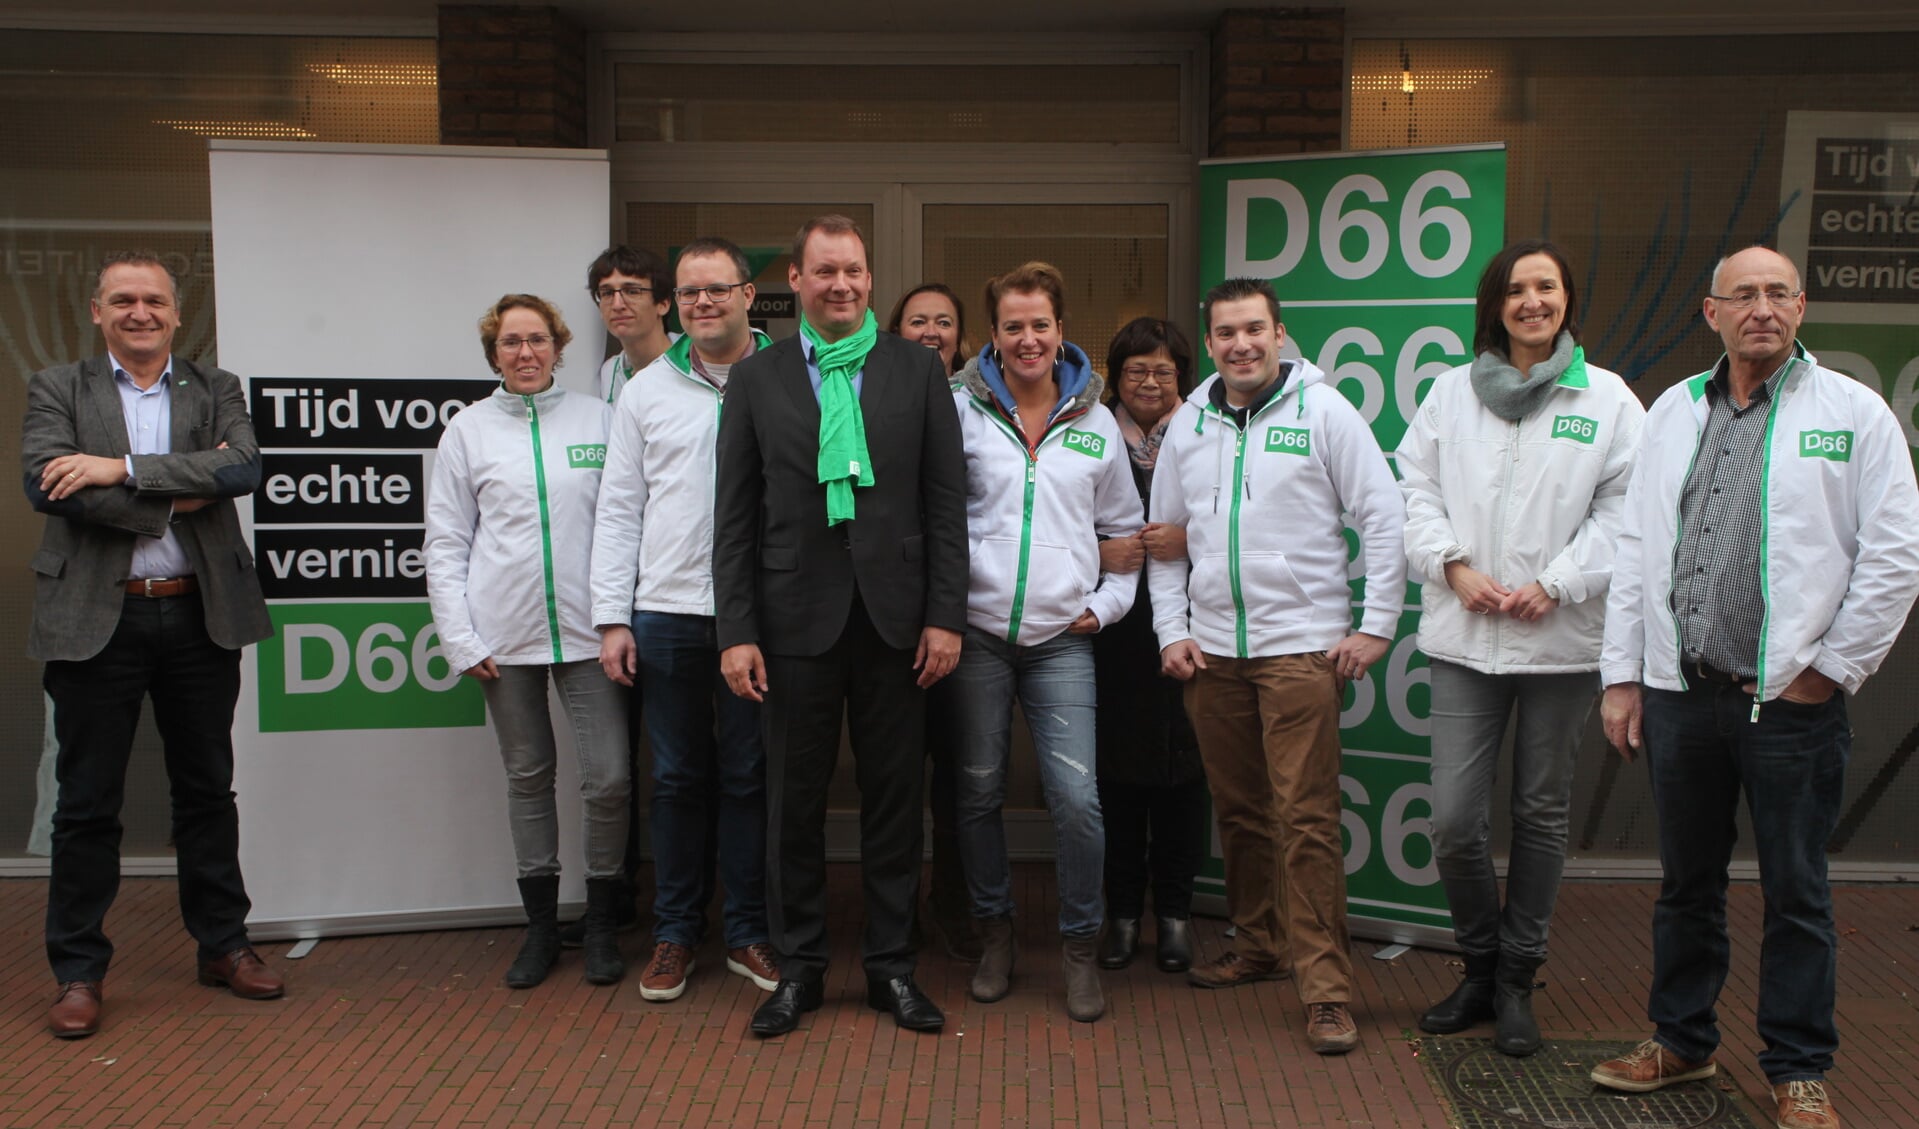 Europarlementariër Van Miltenburg poseert samen met de plaatselijke afdeling van D66 (Foto's Peter Kuijpers).